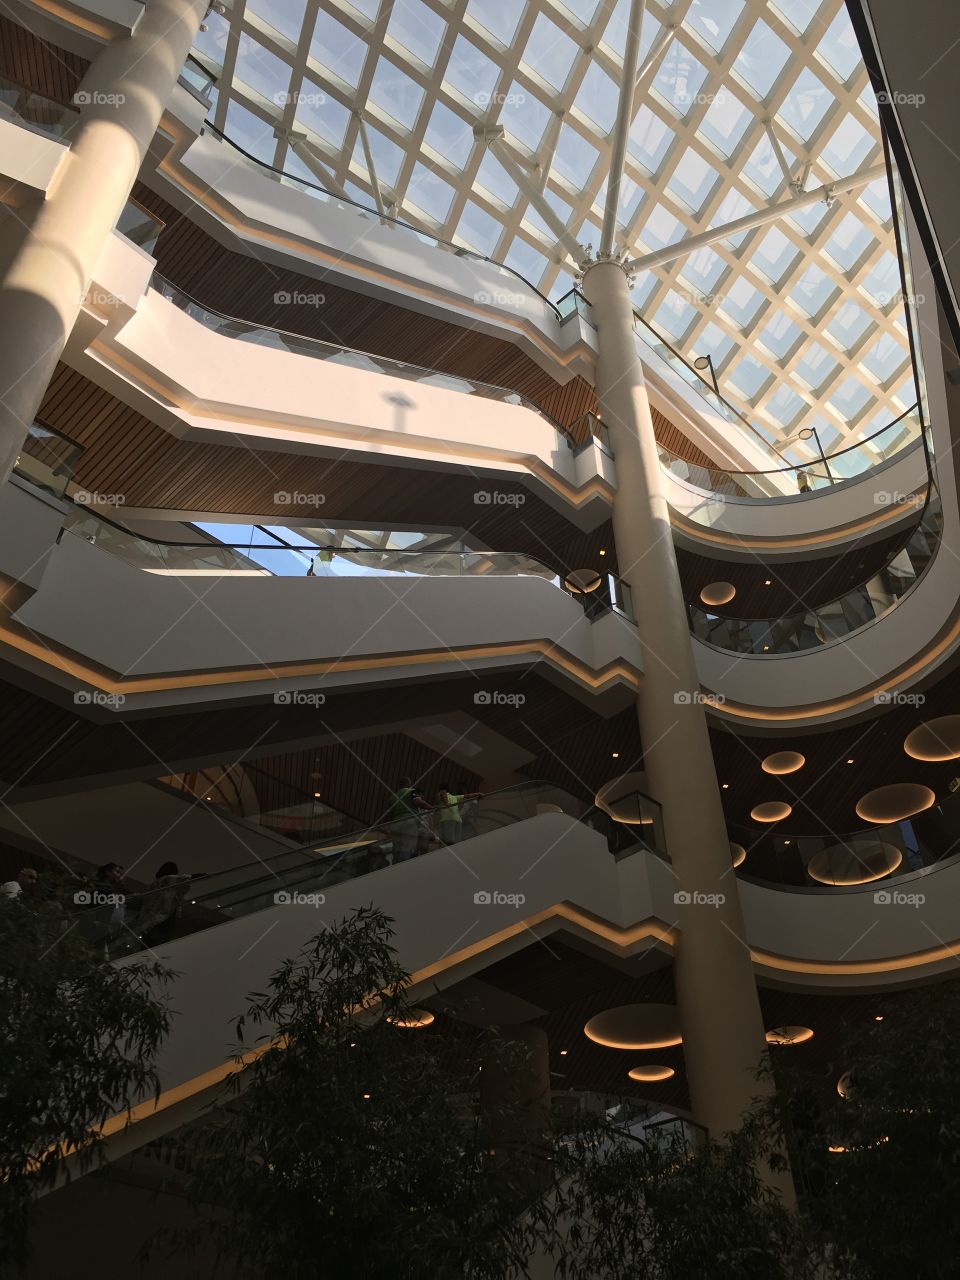 Lebanon, Mall architecture 